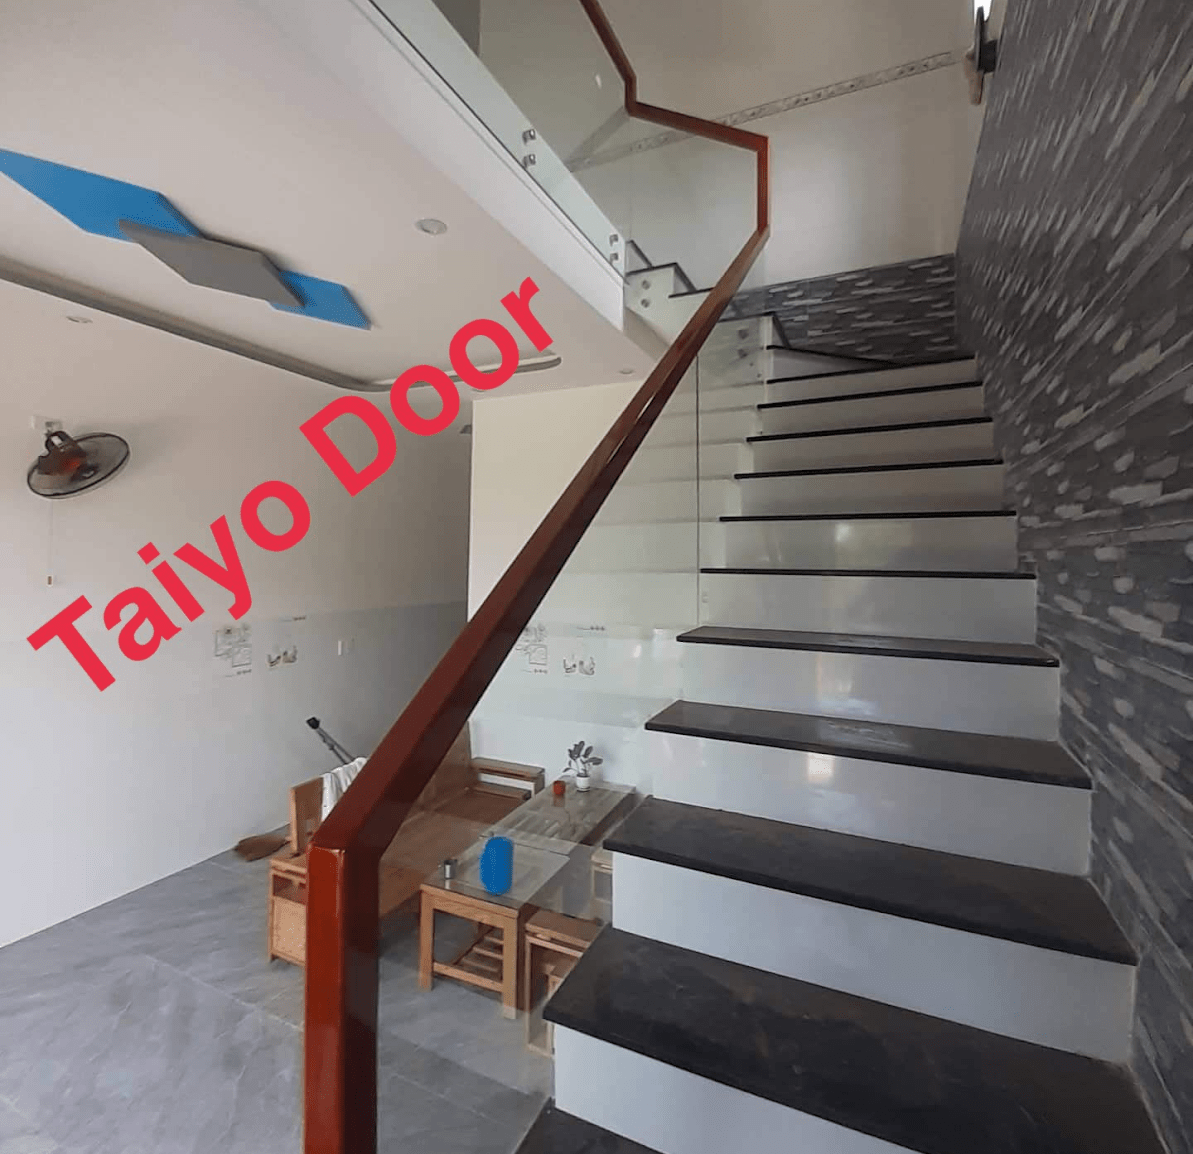 Taiyo Door